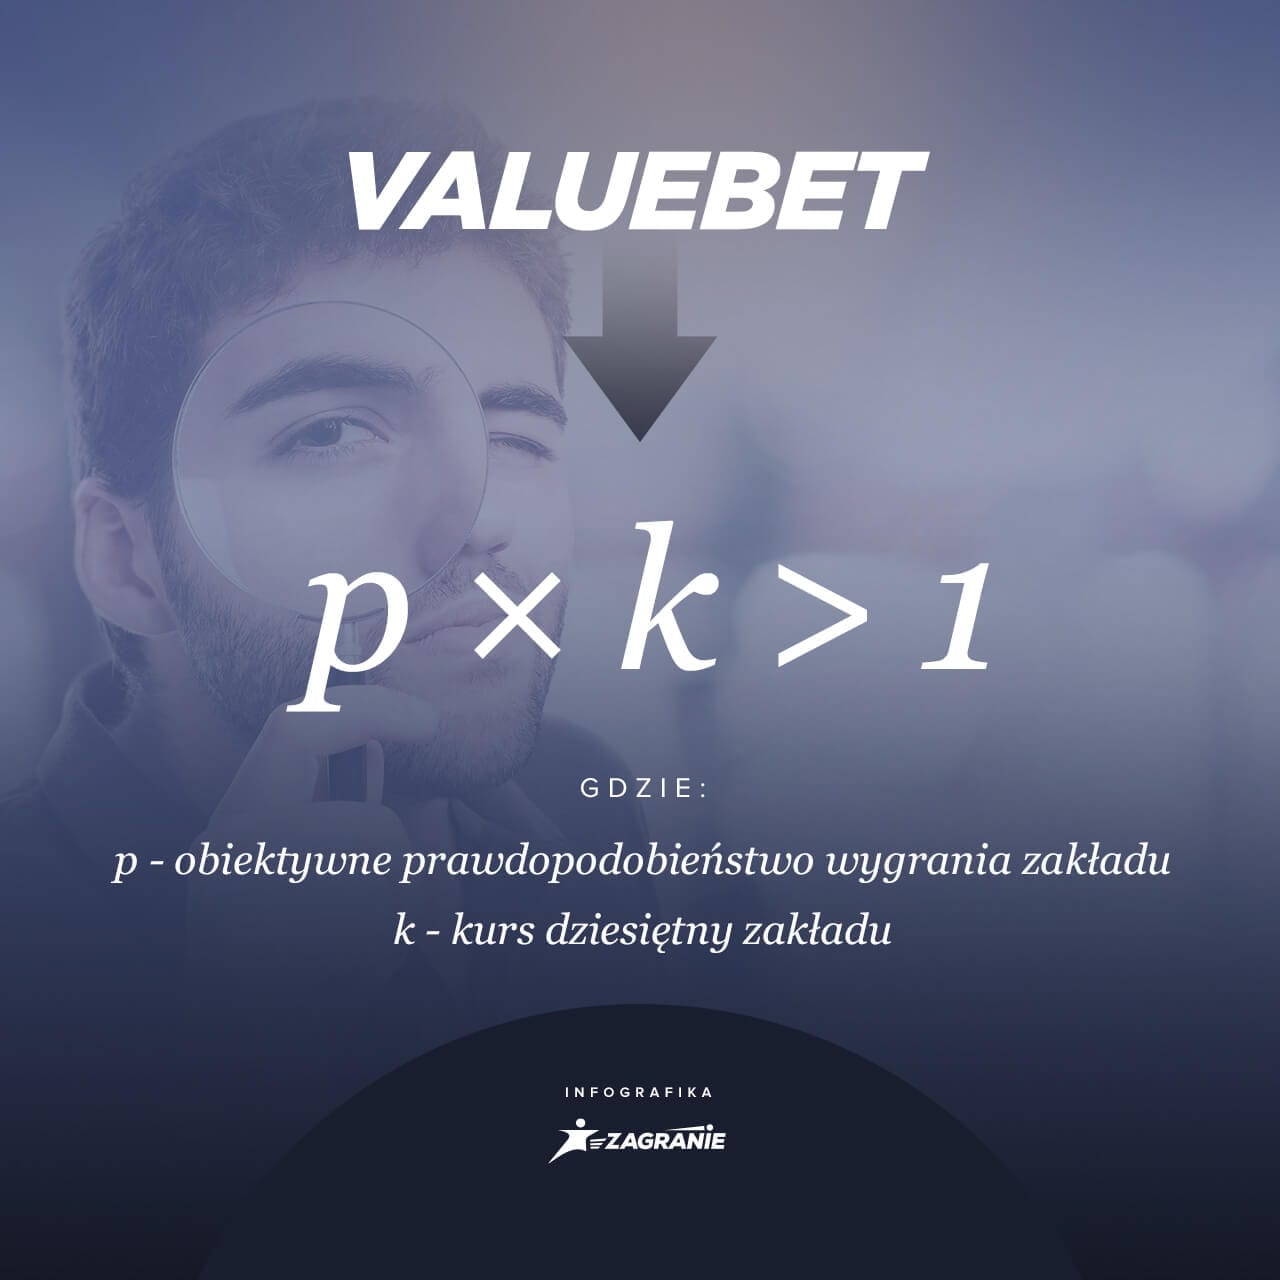 valuebet